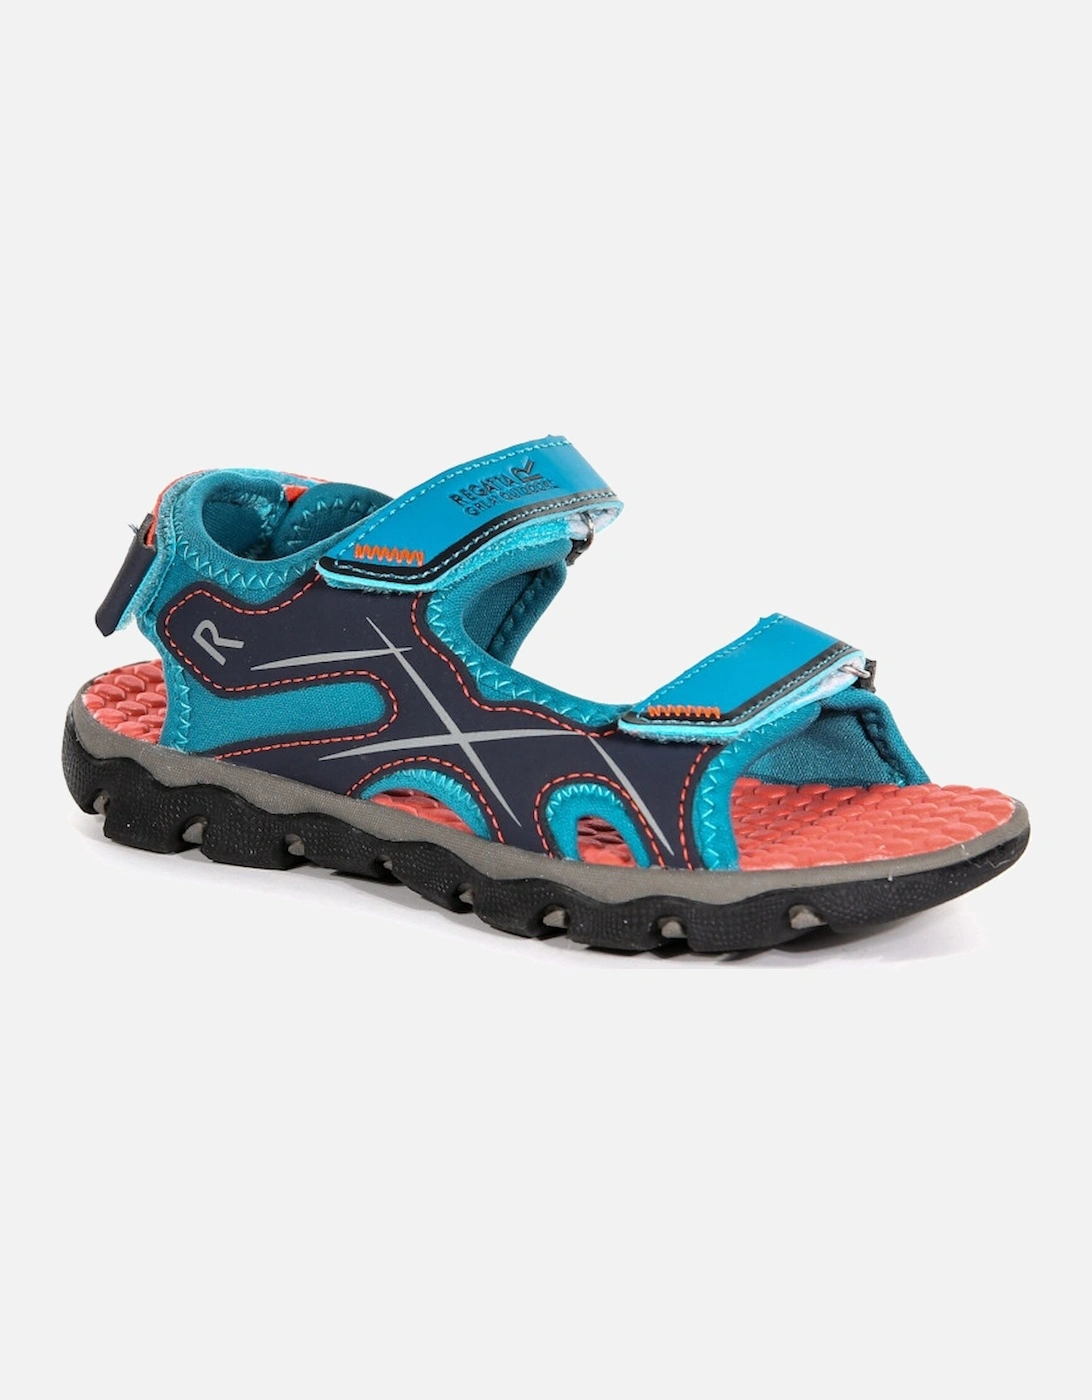 Boys & Girls Kota Drift Lightweight Walking Sandals, 4 of 3